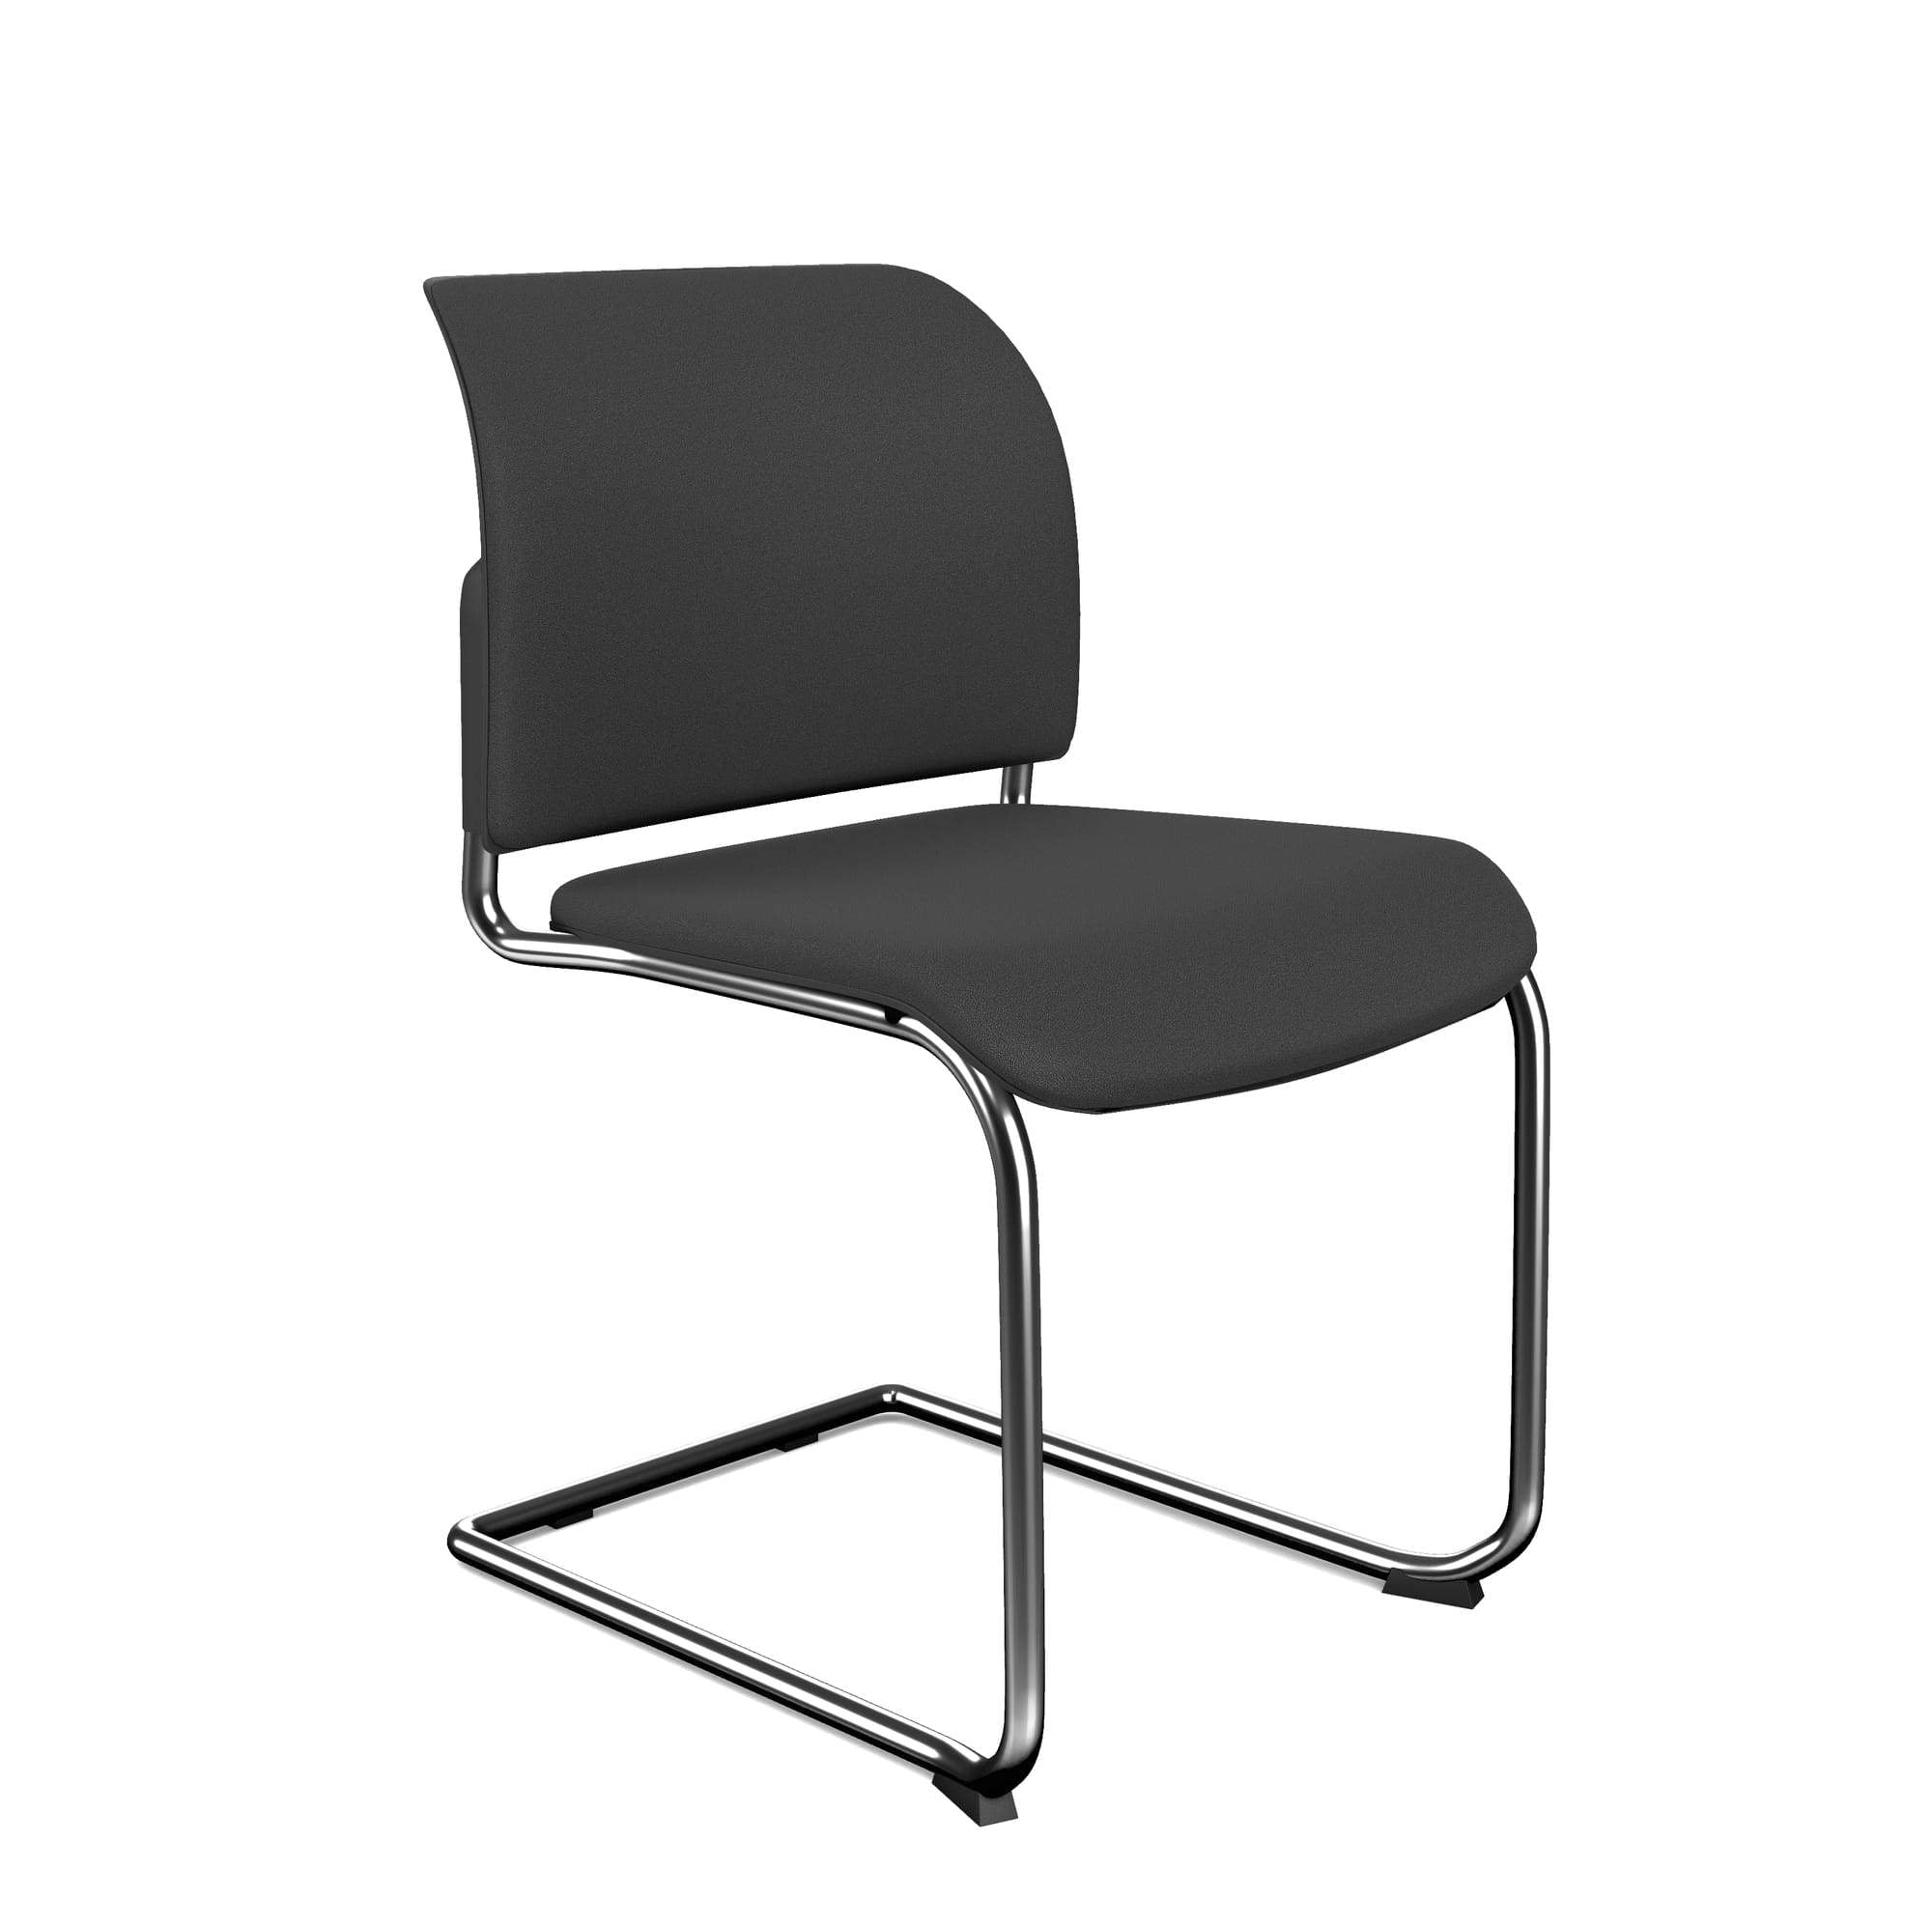 Bit Upholstered Seat and Backrest Chair, Cantilever Frame - Model 570V